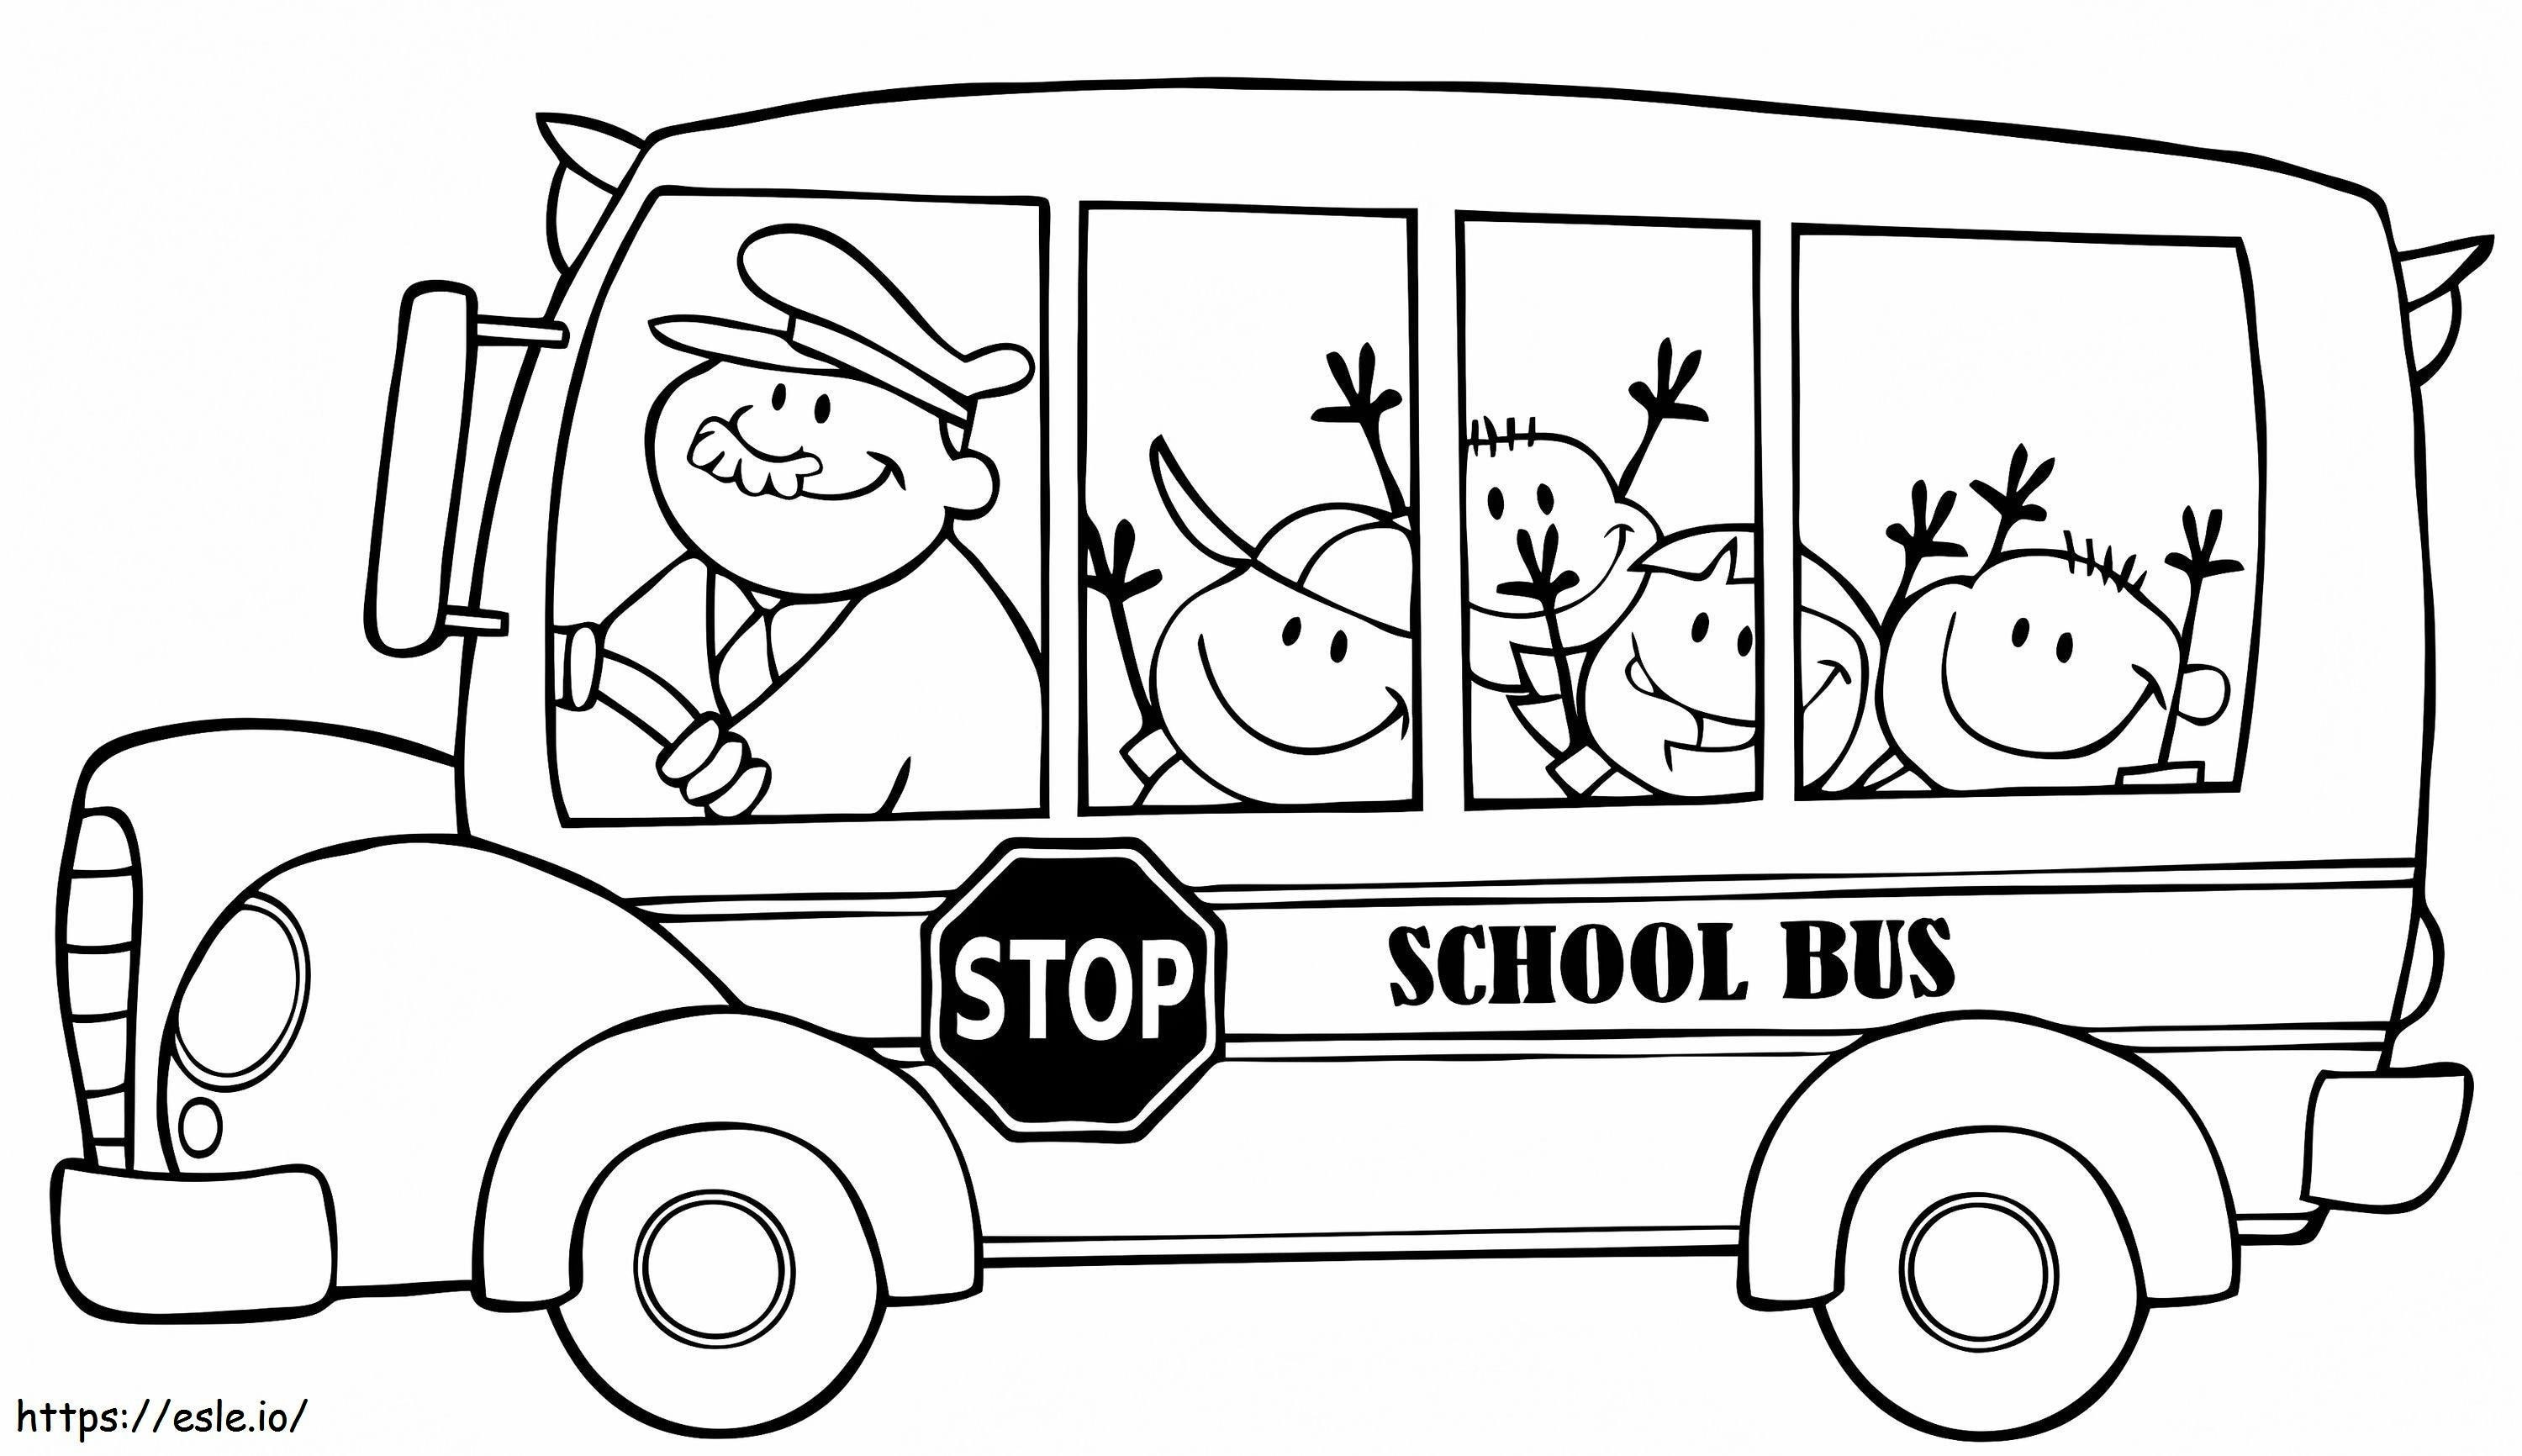 1560589158 Autobus szkolny A4 kolorowanka